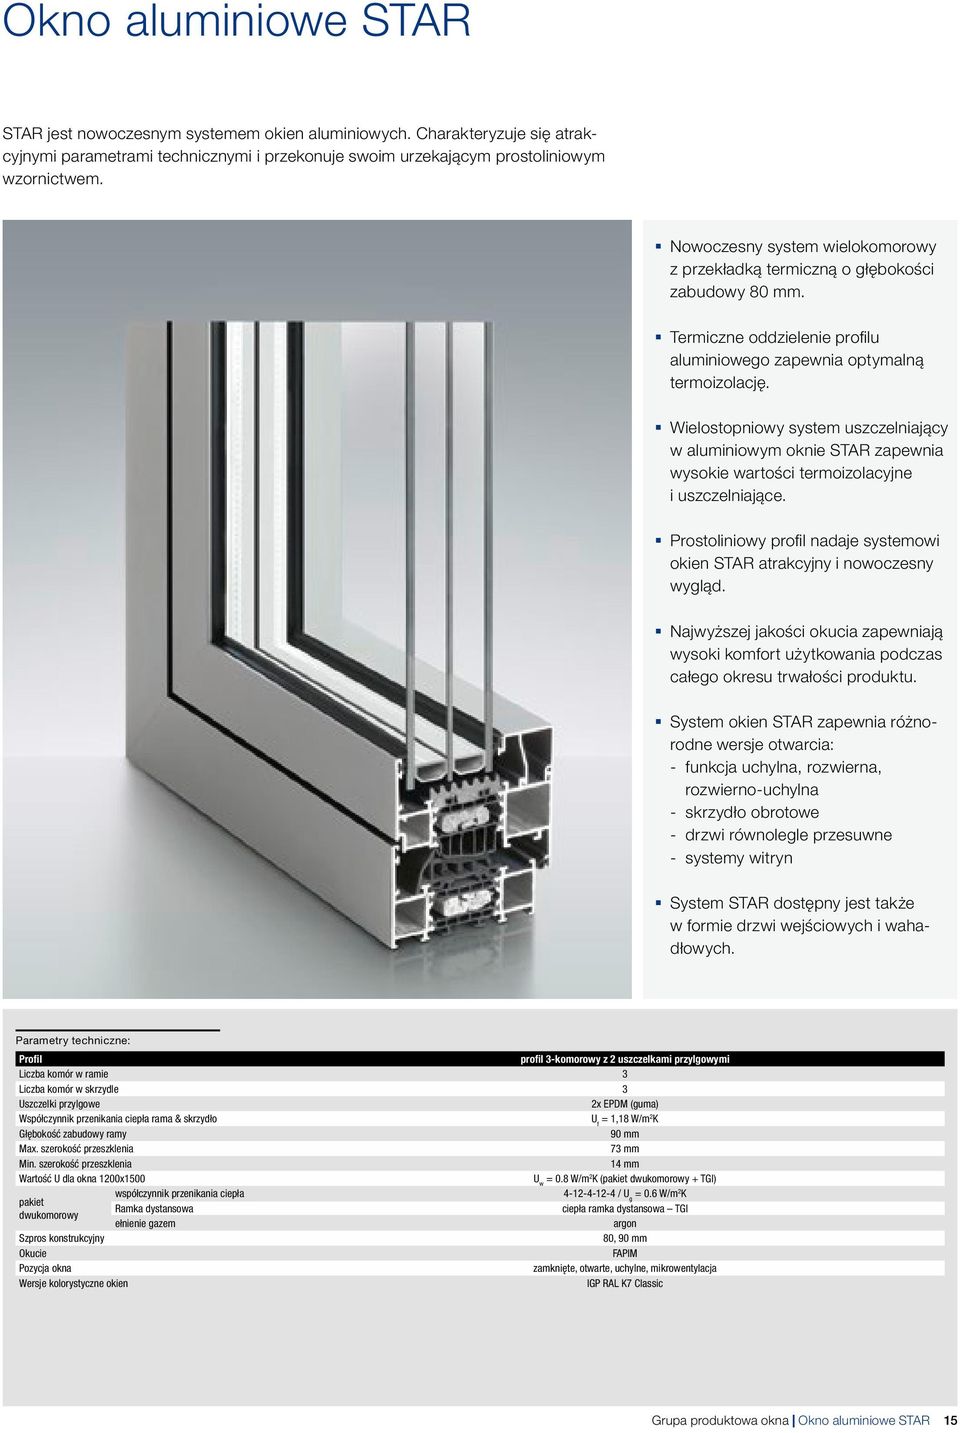 Wielostopniowy system uszczelniający w aluminiowym oknie STAR zapewnia wysokie wartości termoizolacyjne i uszczelniające.